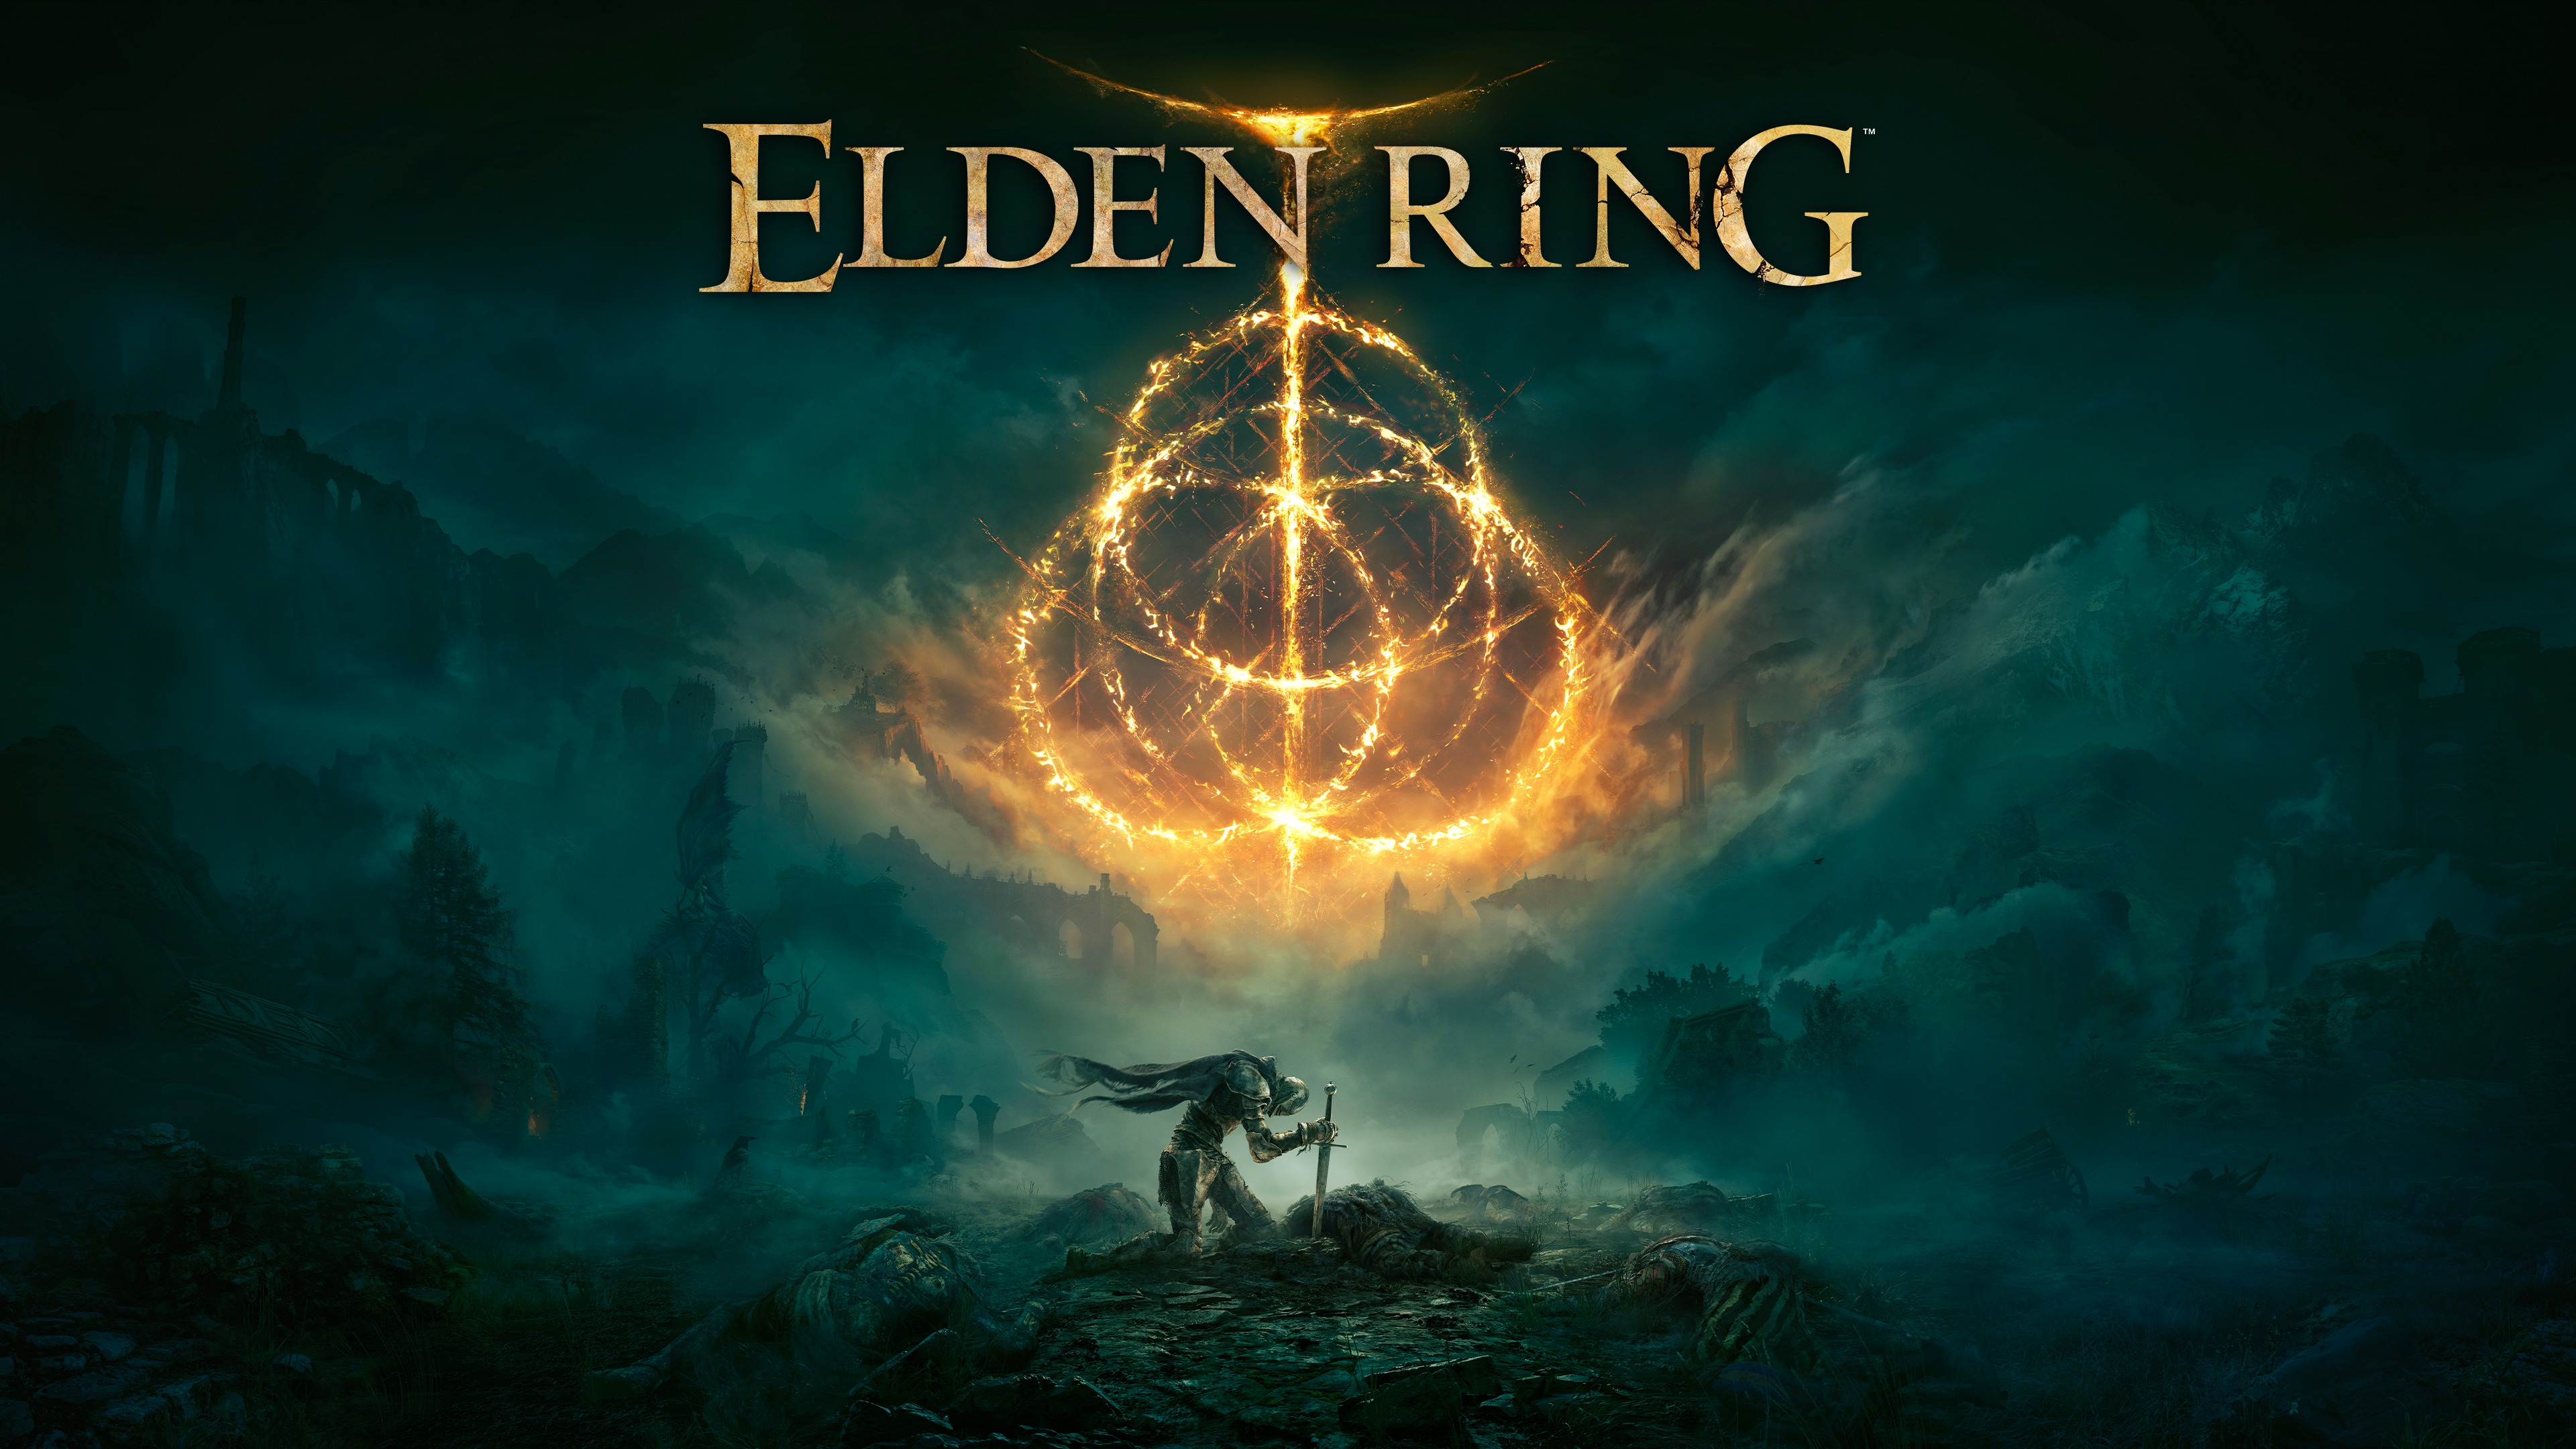 New Elden Ring Gaming Wallpapers